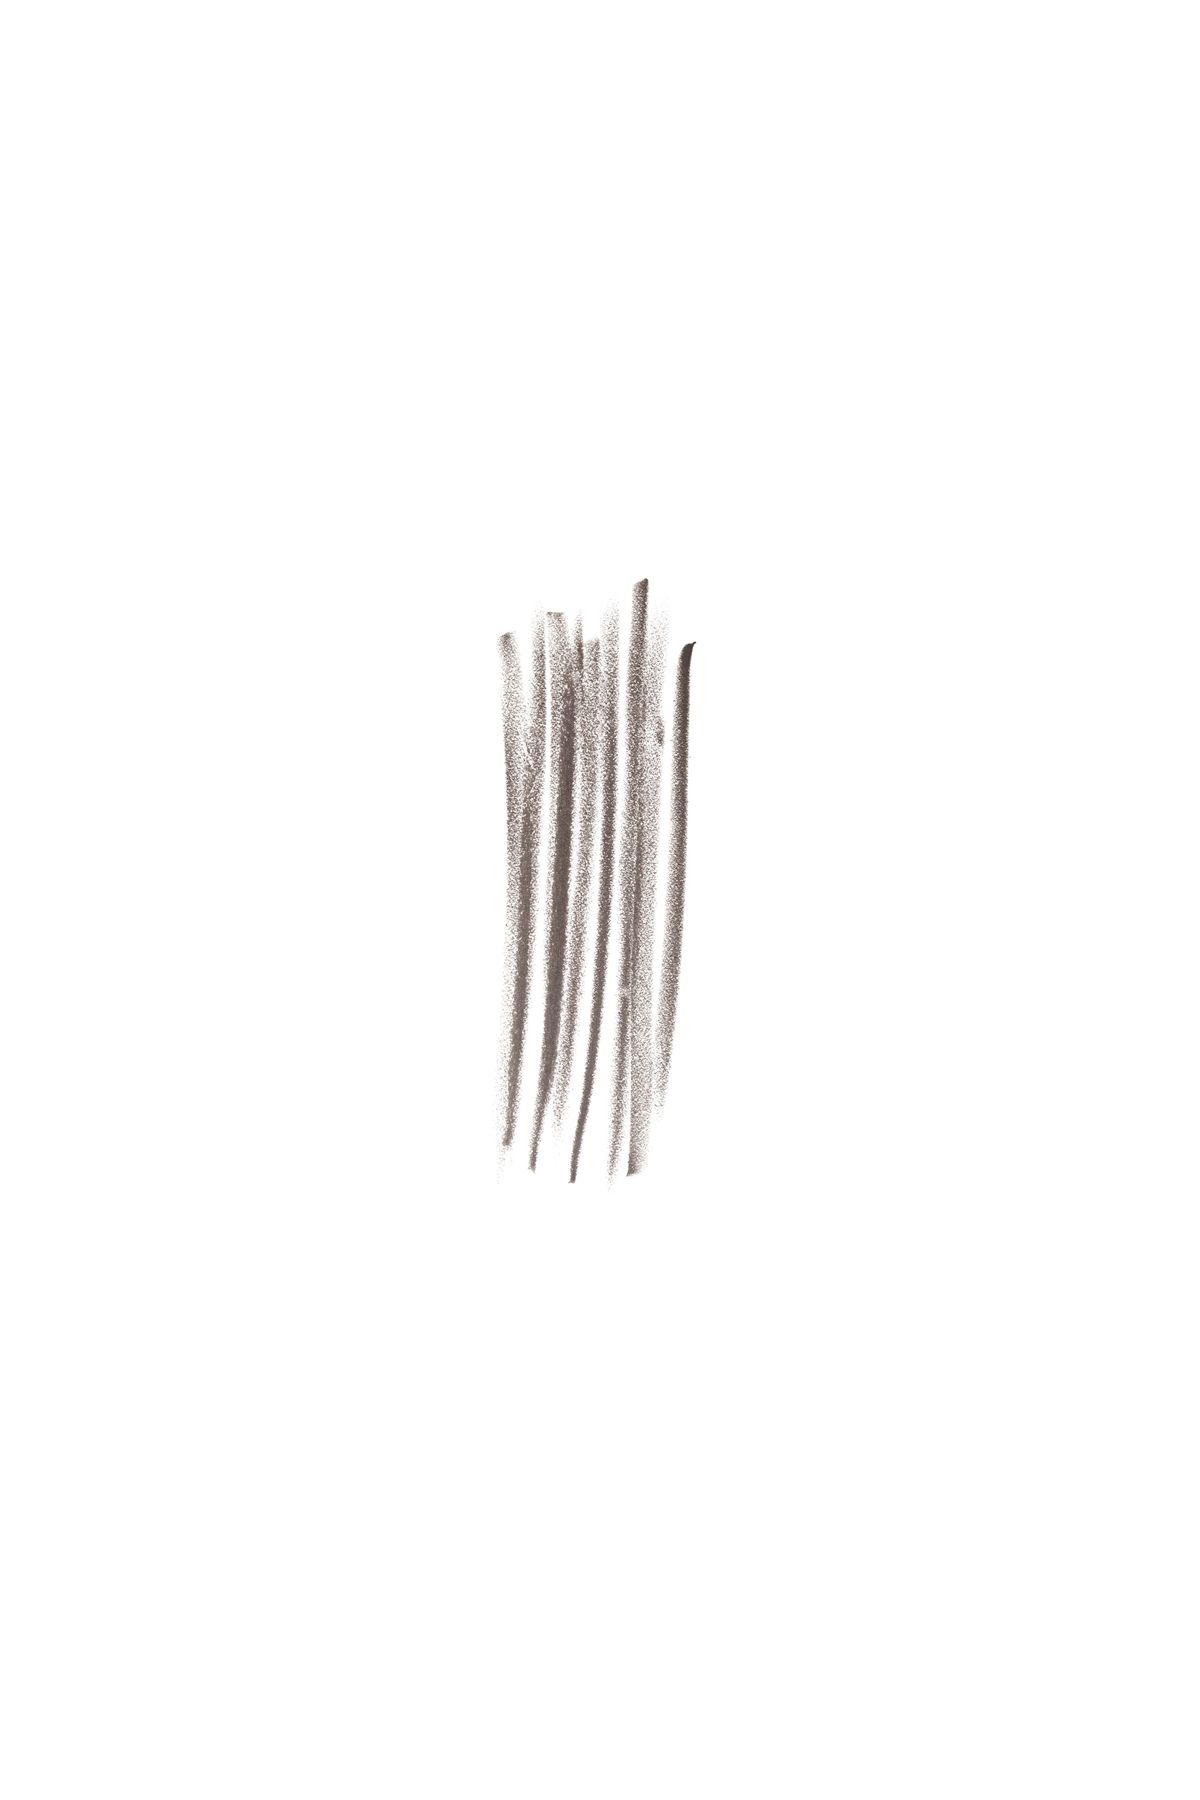 Bobbi Brown مداد ابرو با ماندگاری بلند رنگ ابرو متعادل قهوه ای 716170312071